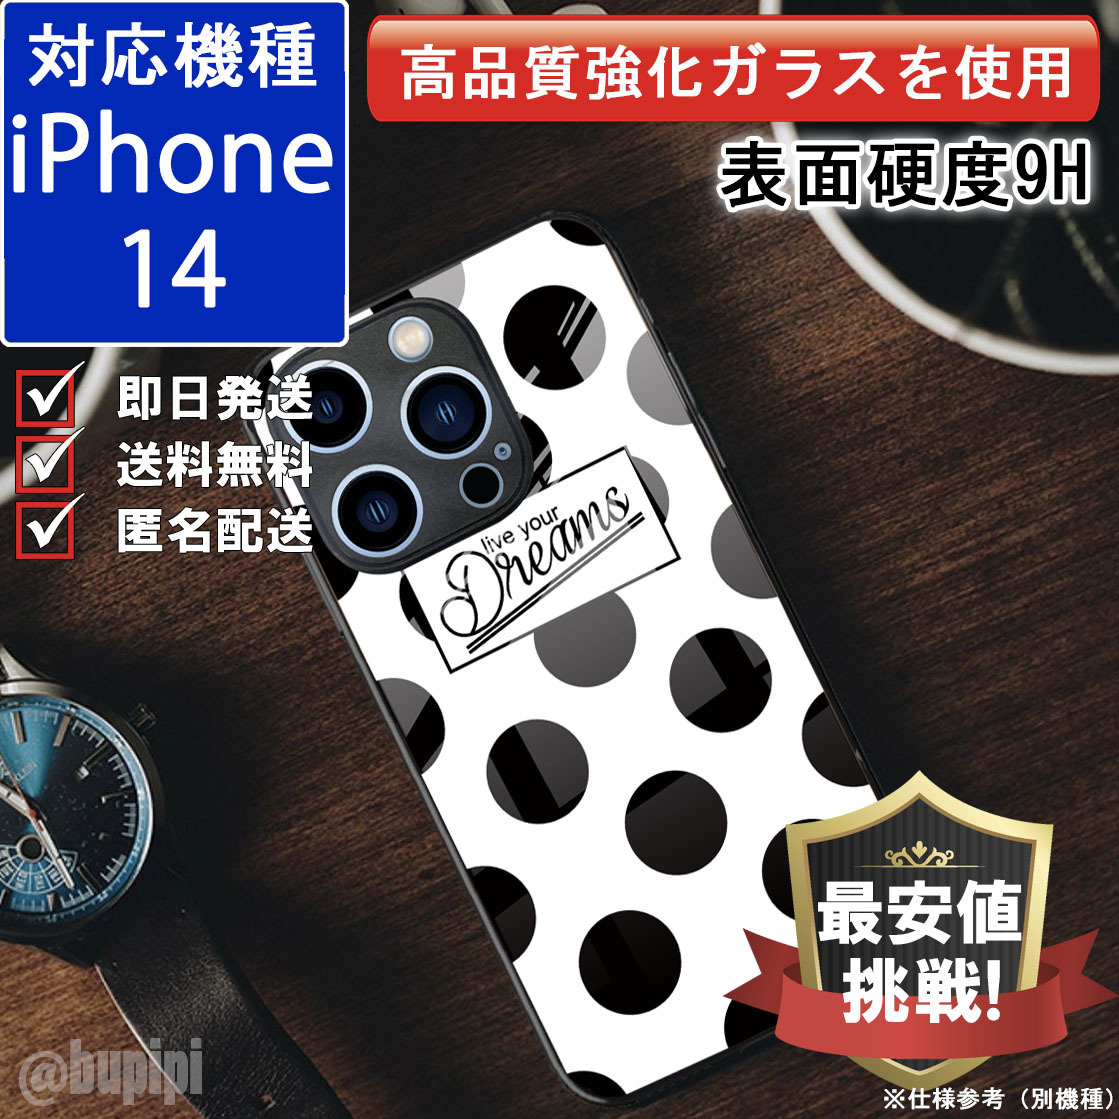 iPhone 14 対応 9H ハイブリッド ガラスケース ハードケース 送料無料 カバー 衝撃吸収 全面保護